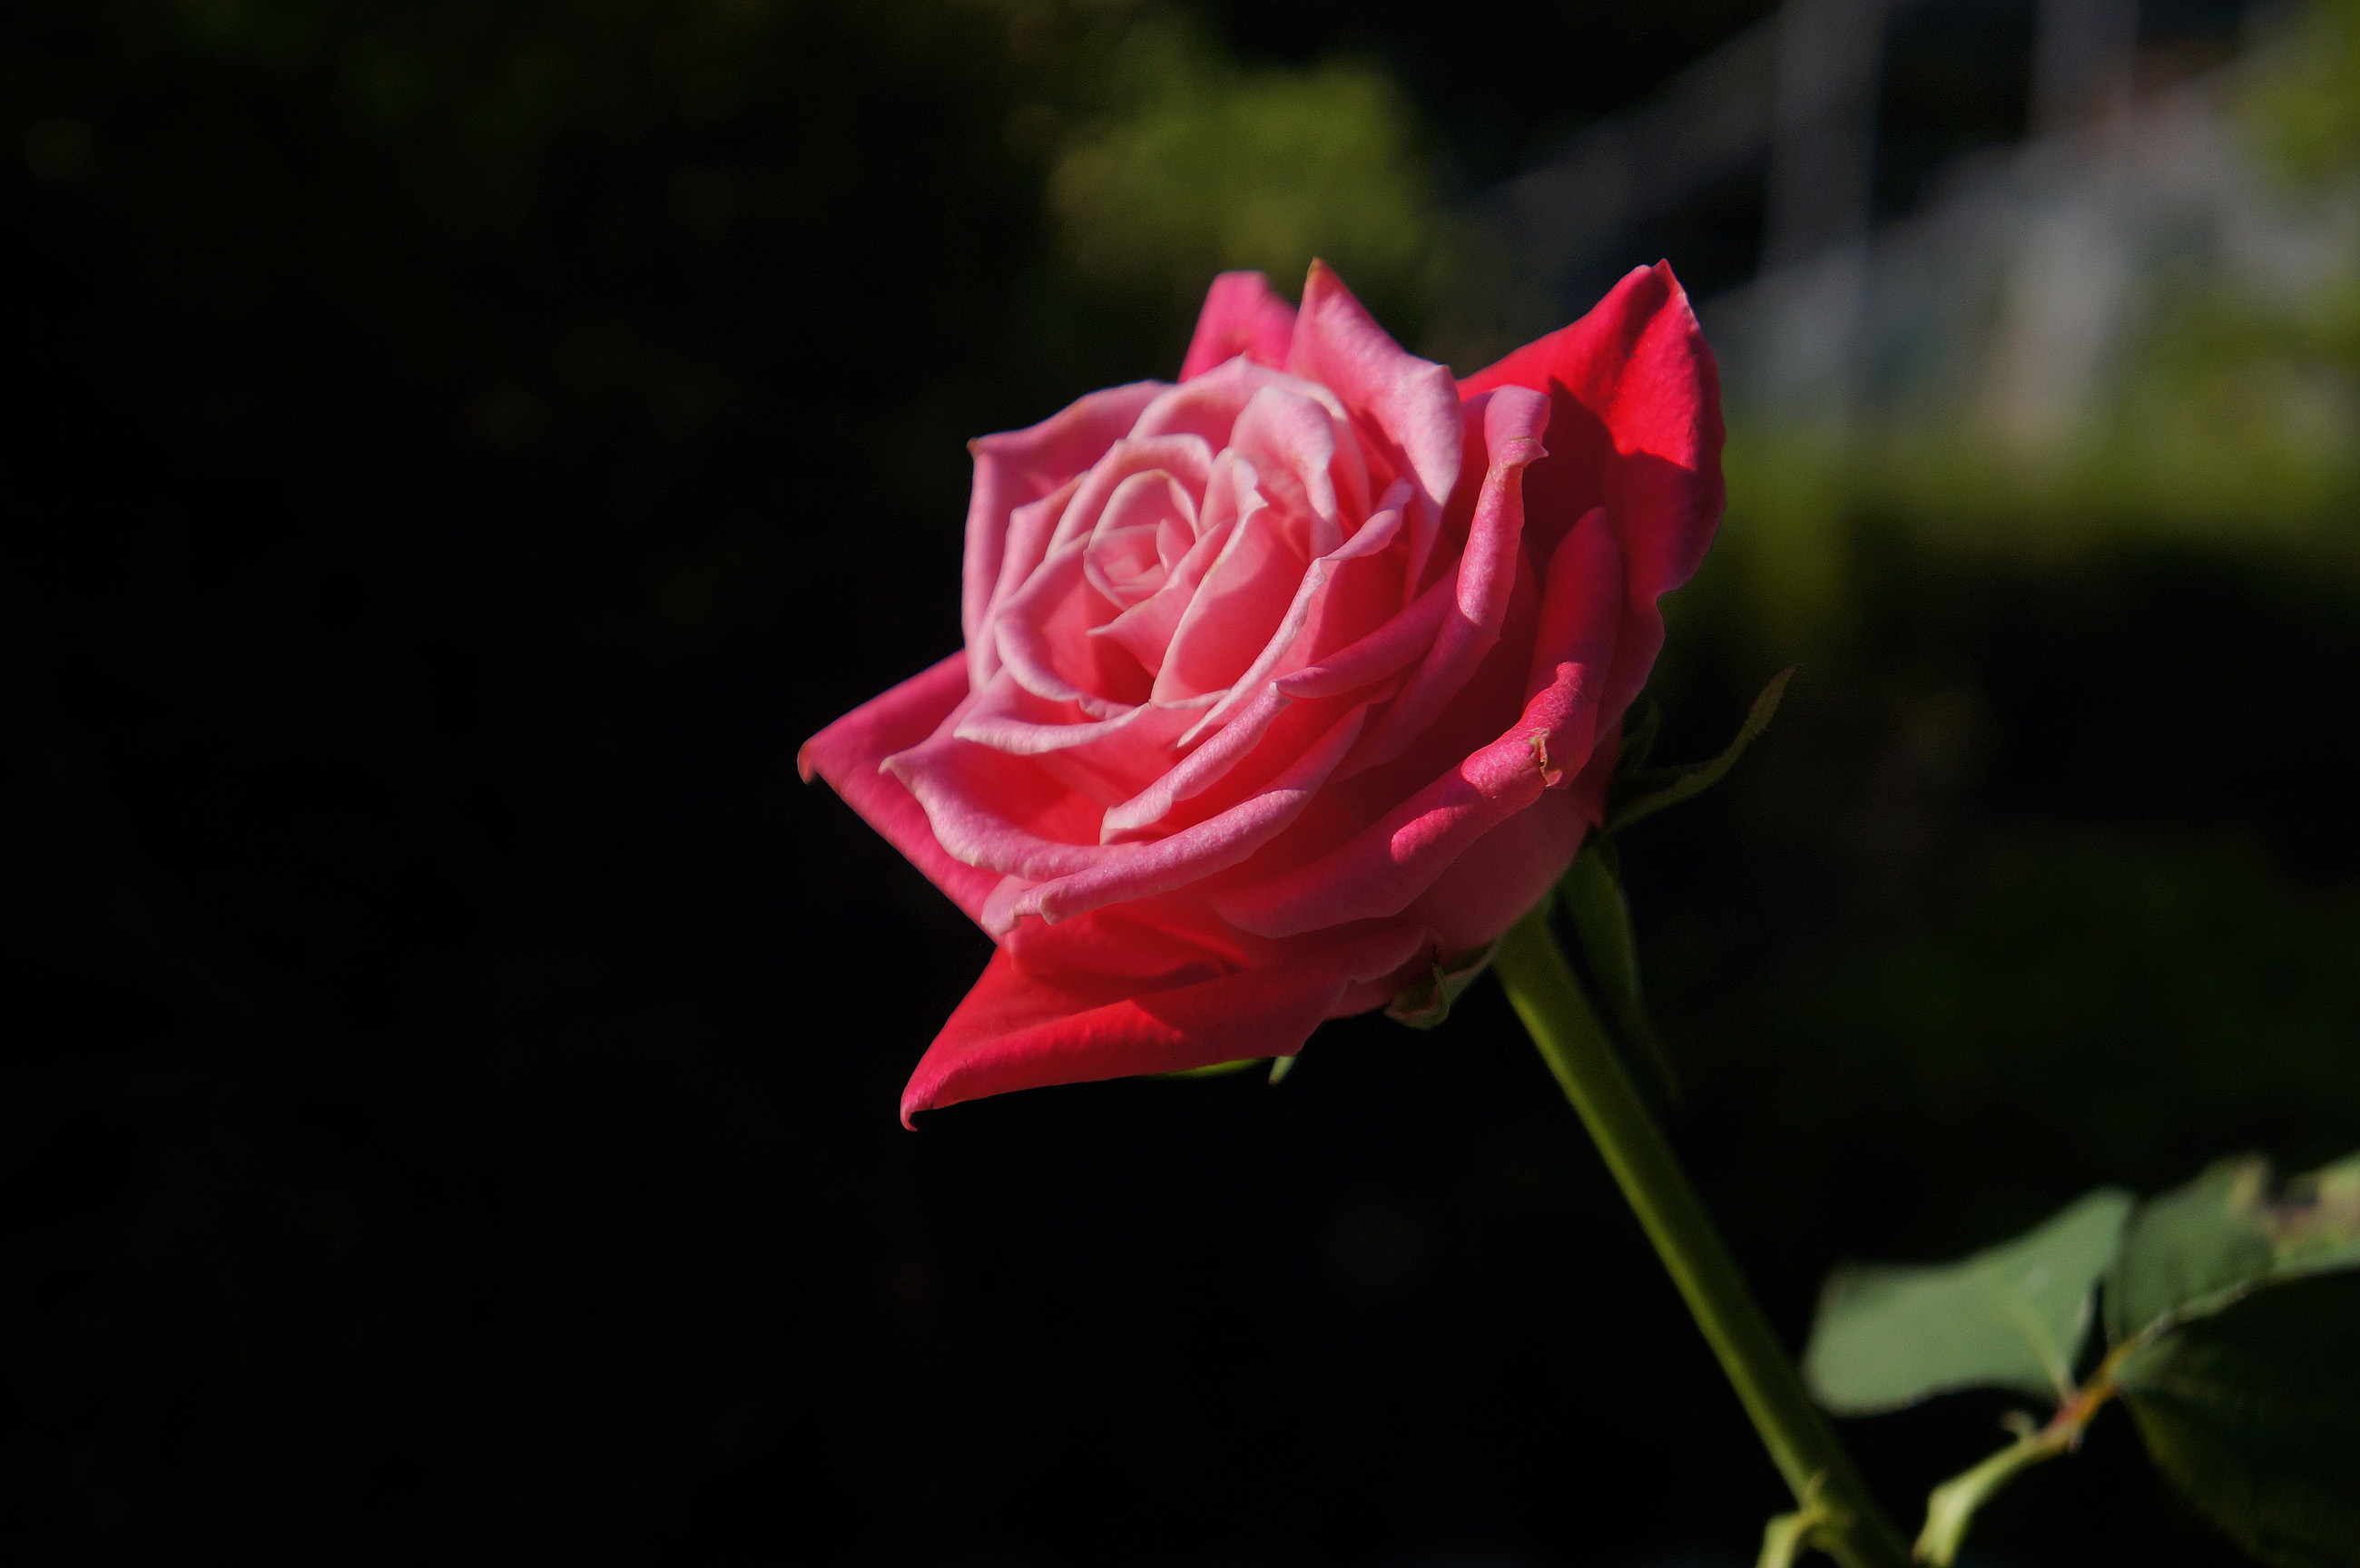 赤いバラ 真紅の薔薇の写真 高解像度画像 デスクトップ壁紙 無料素材 フリー素材 商用利用可能 Hp用素材 ミラーレス Sony Nex 5n 大きな写真 絵ココロ レビュー 感想 子育て 料理 豆知識 美容 健康 イラスト Cg